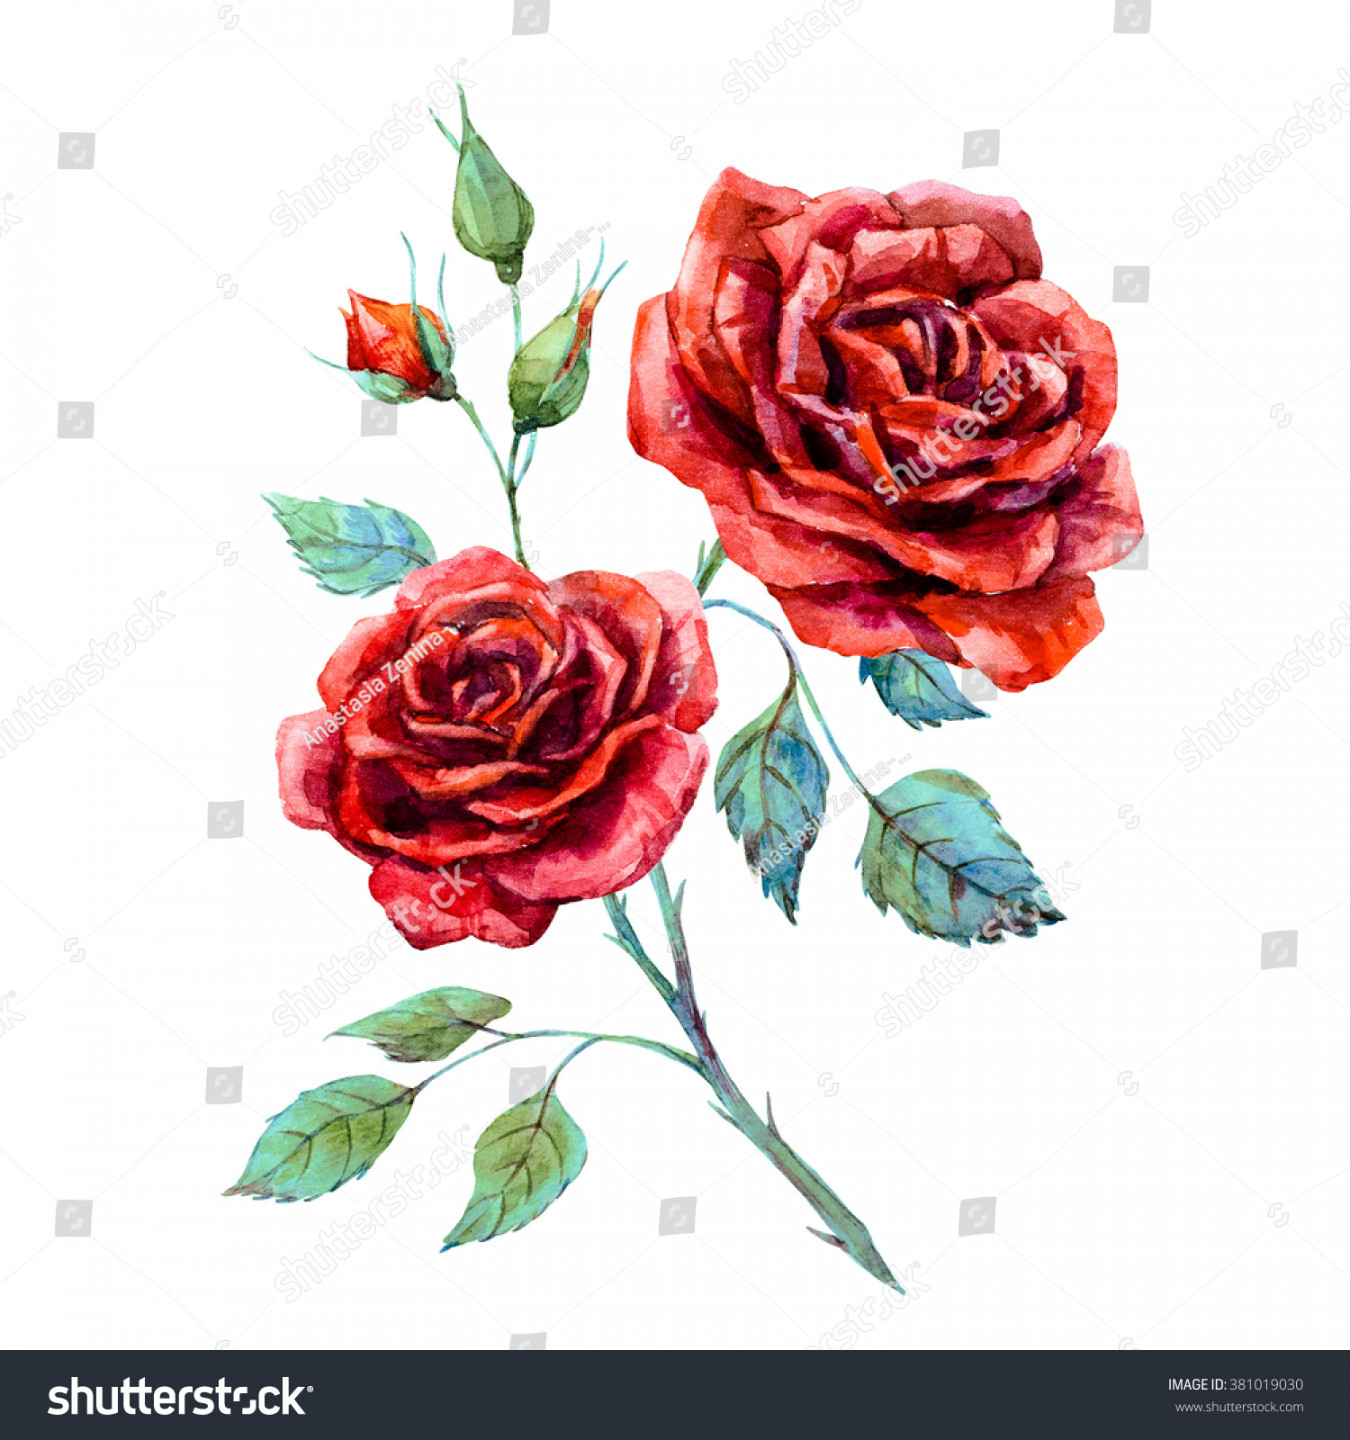 Aquarellzeichnung auf roter Rose einzeln auf: Stockillustration